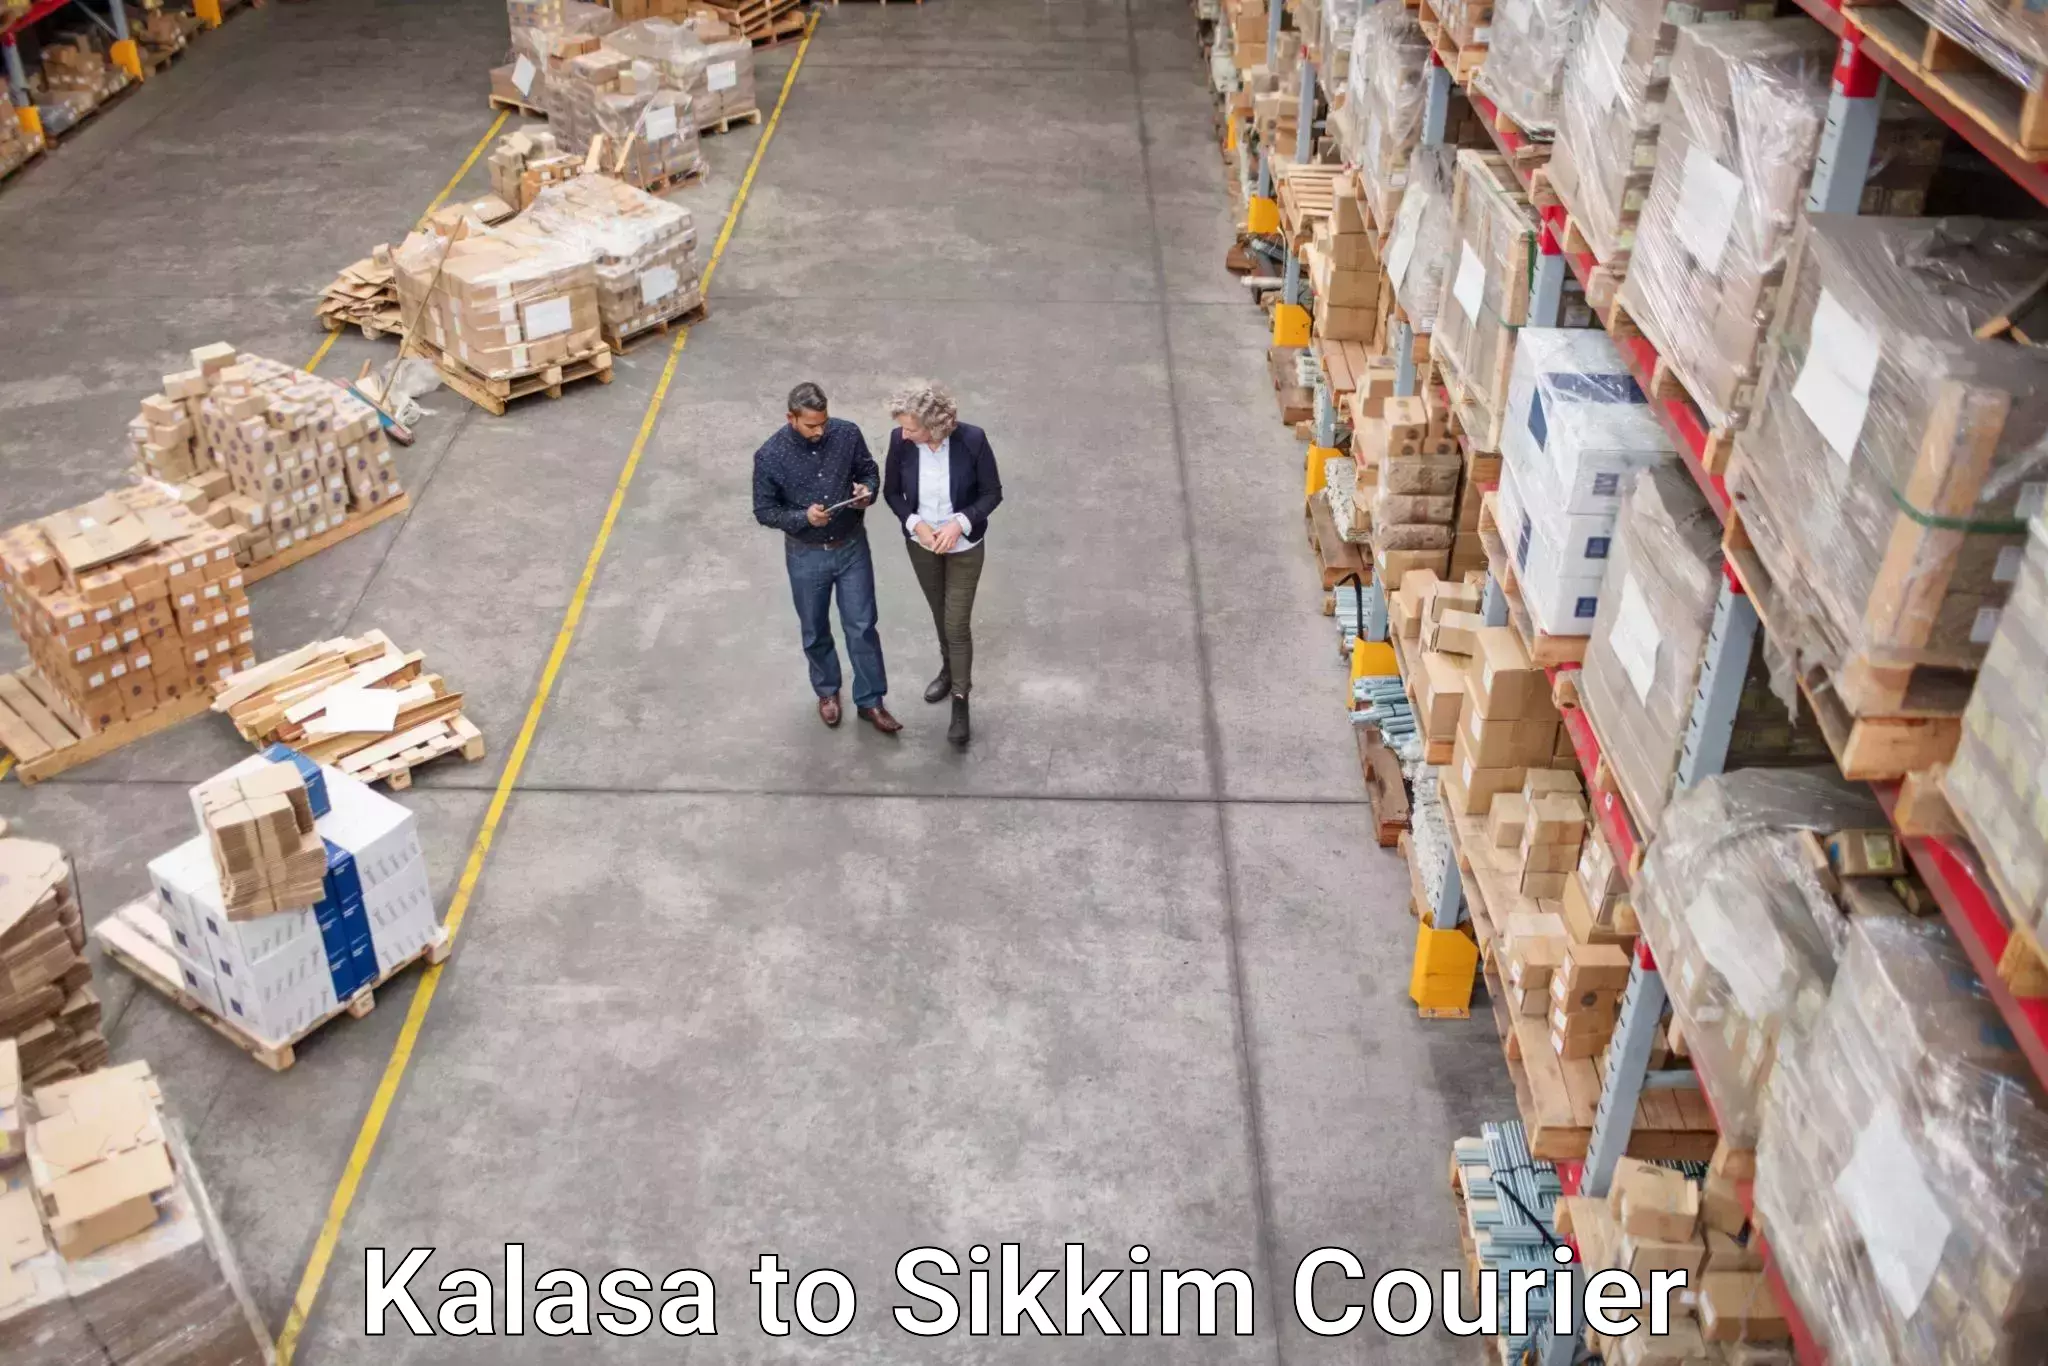 Urgent courier needs Kalasa to Gangtok